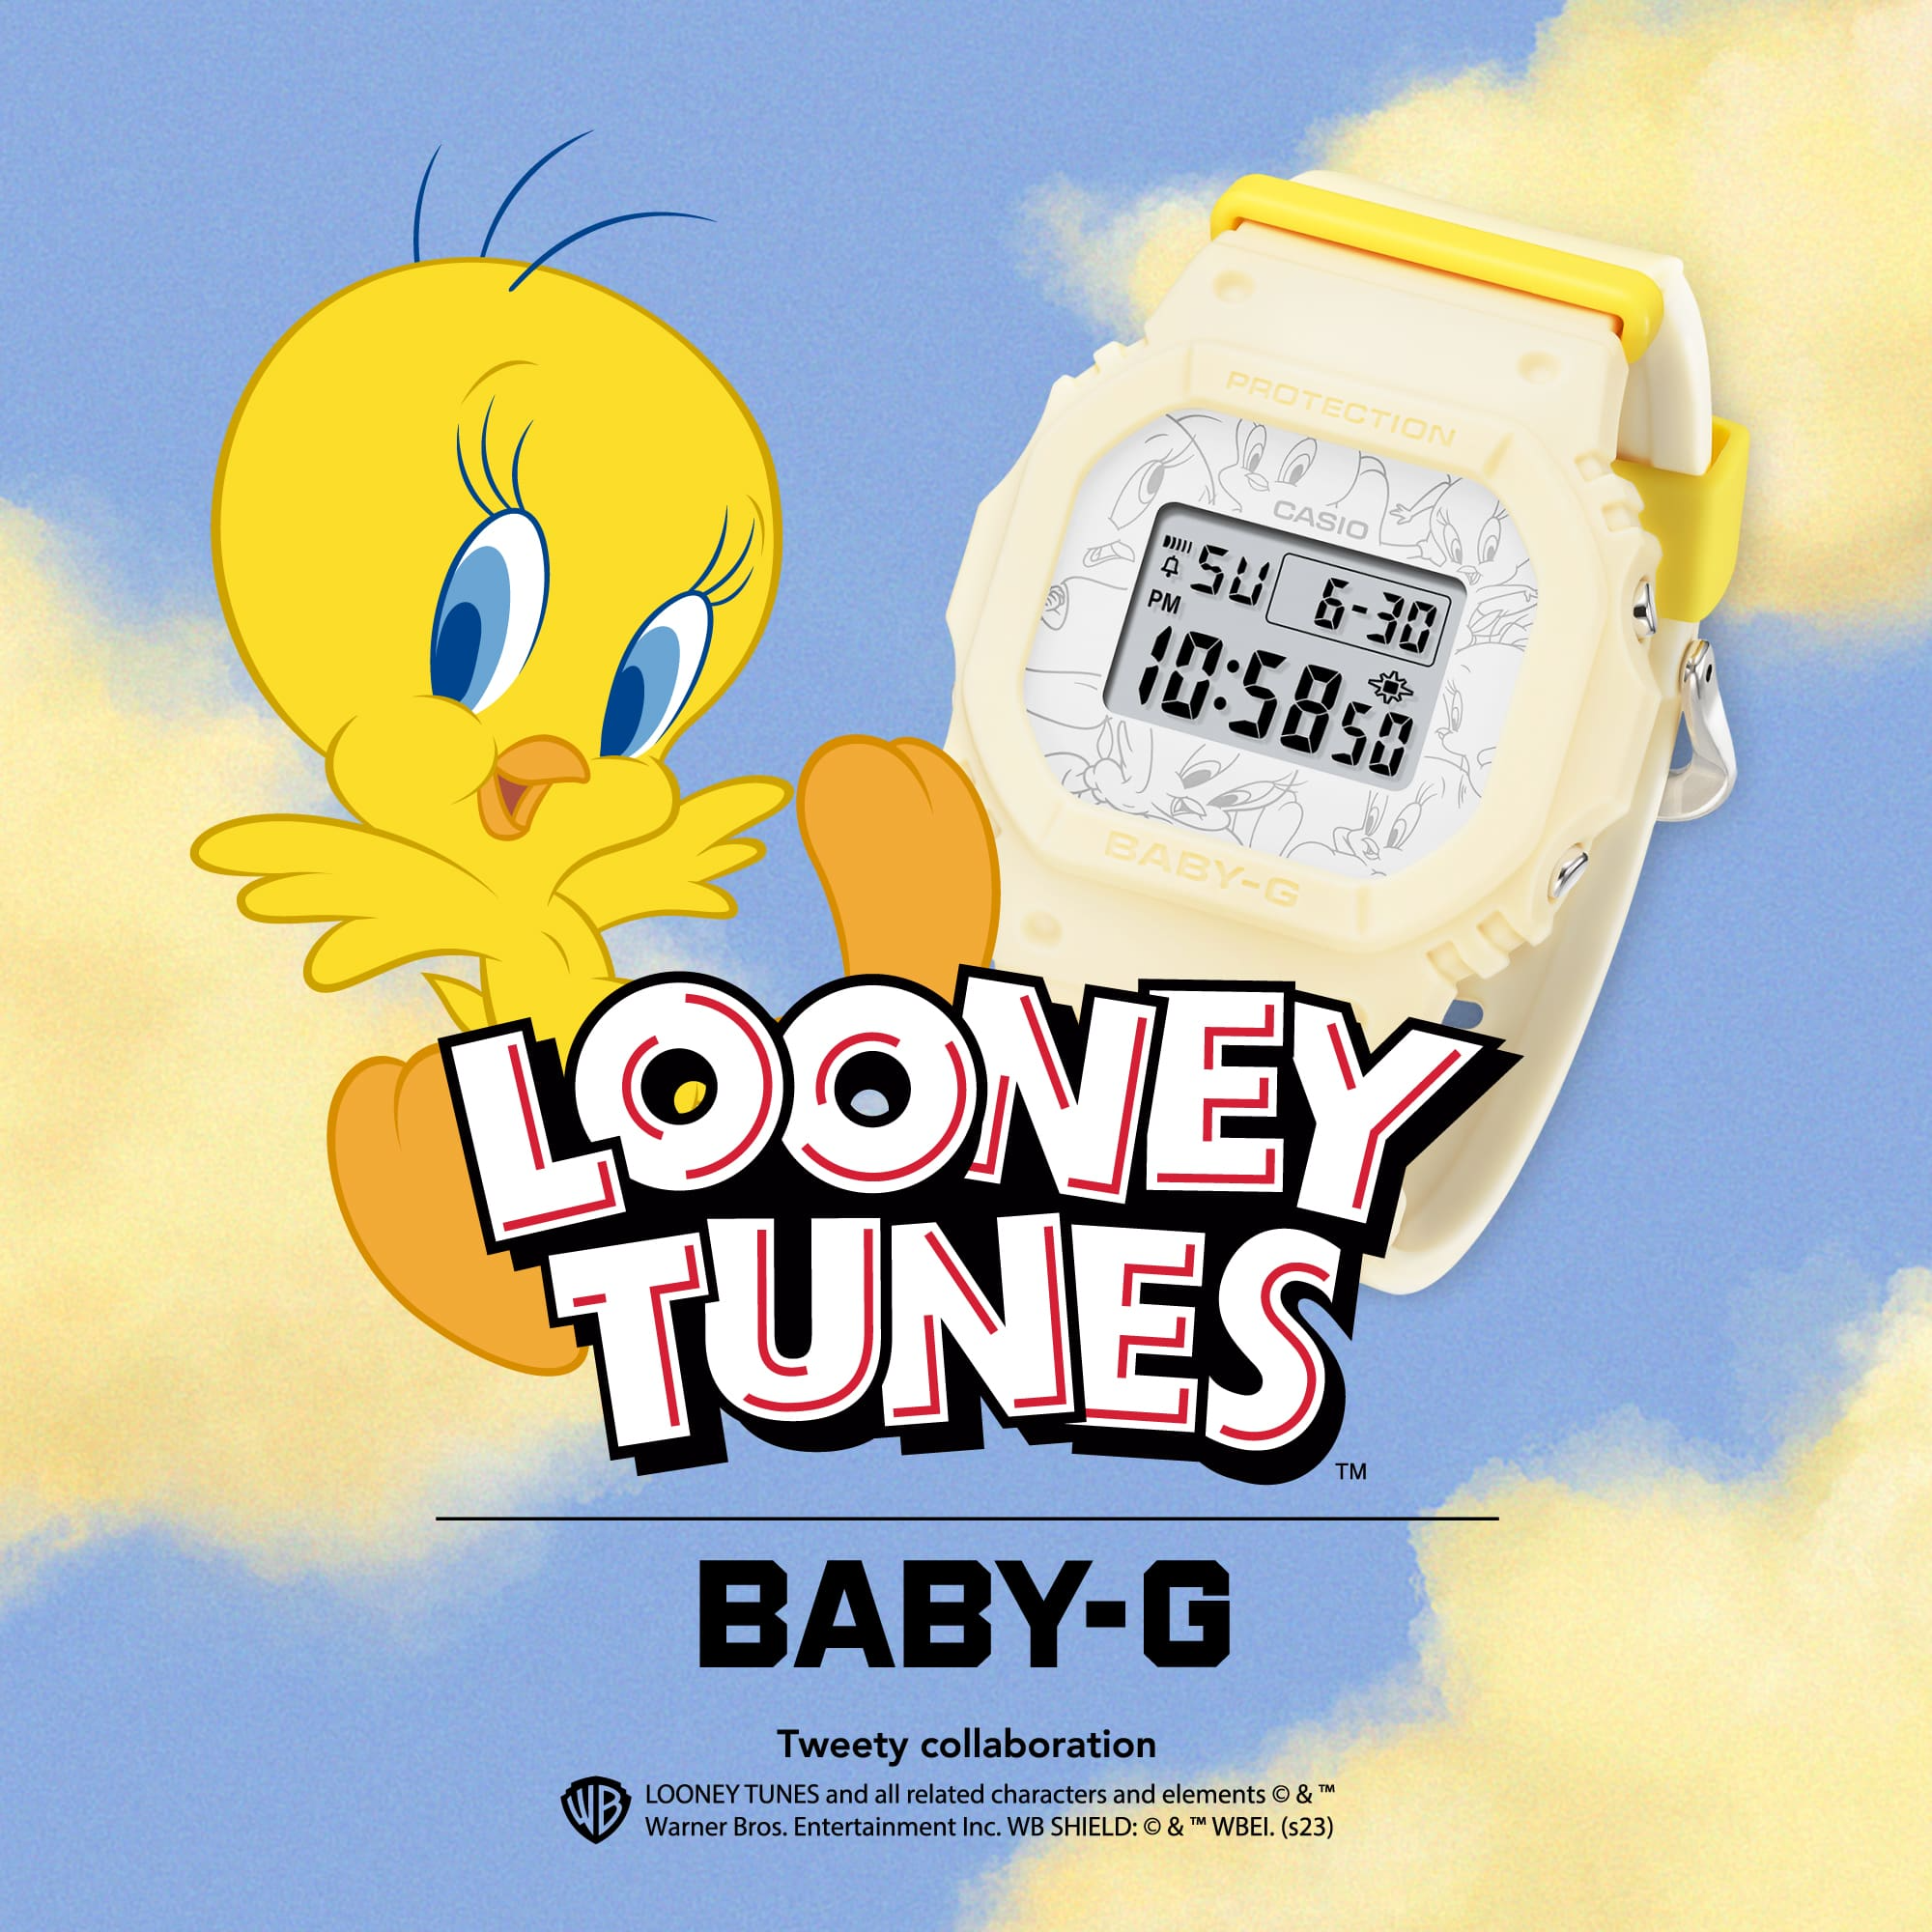 Đồng Hồ Casio Baby-G BGD-565TW-5DR Chính Hãng